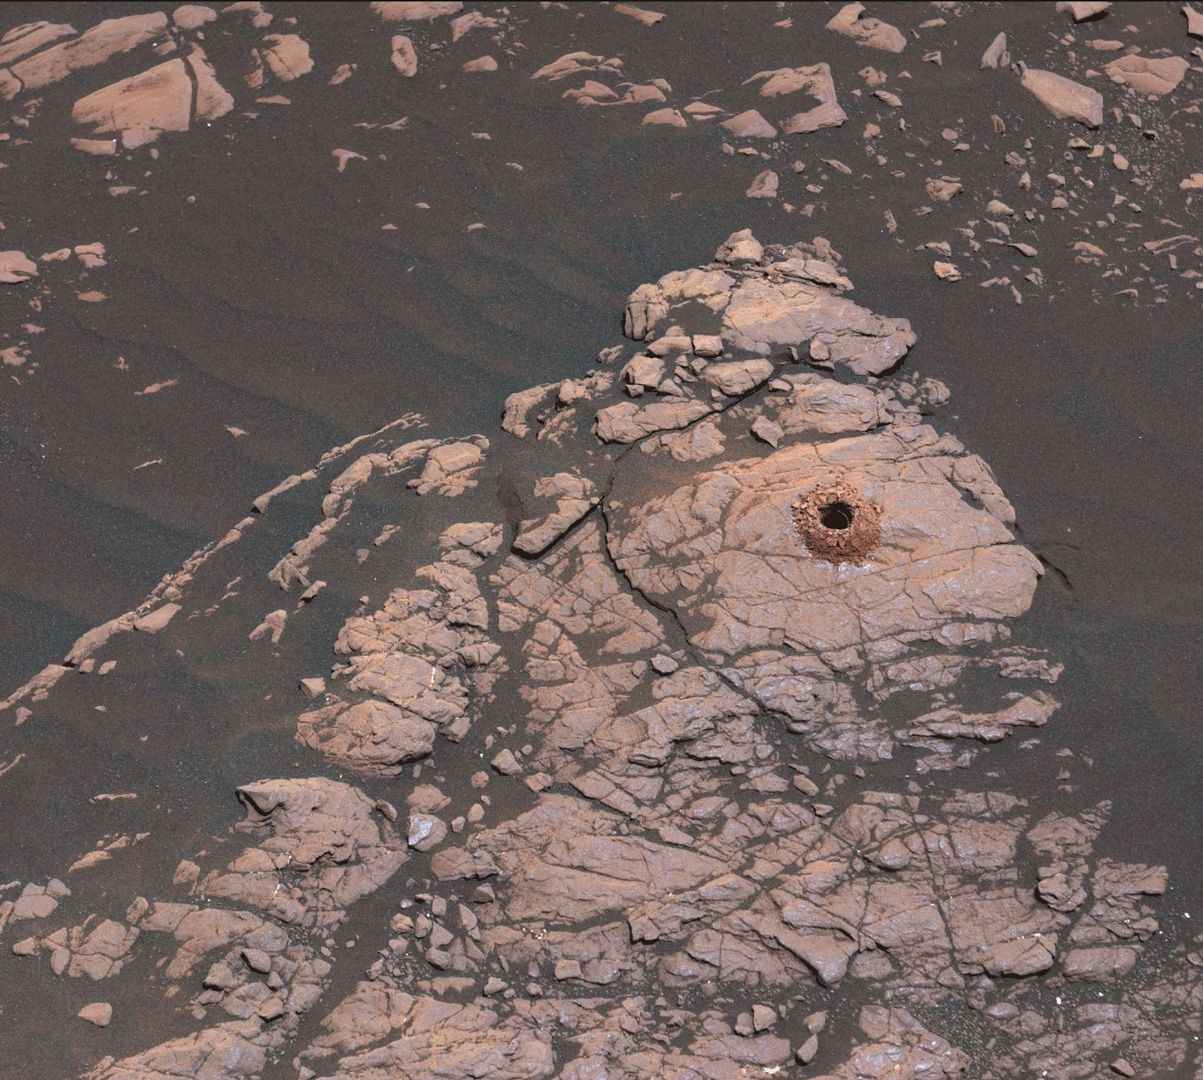 Łazik Curiosity wywiercił dziurę w powierzchni Marsa